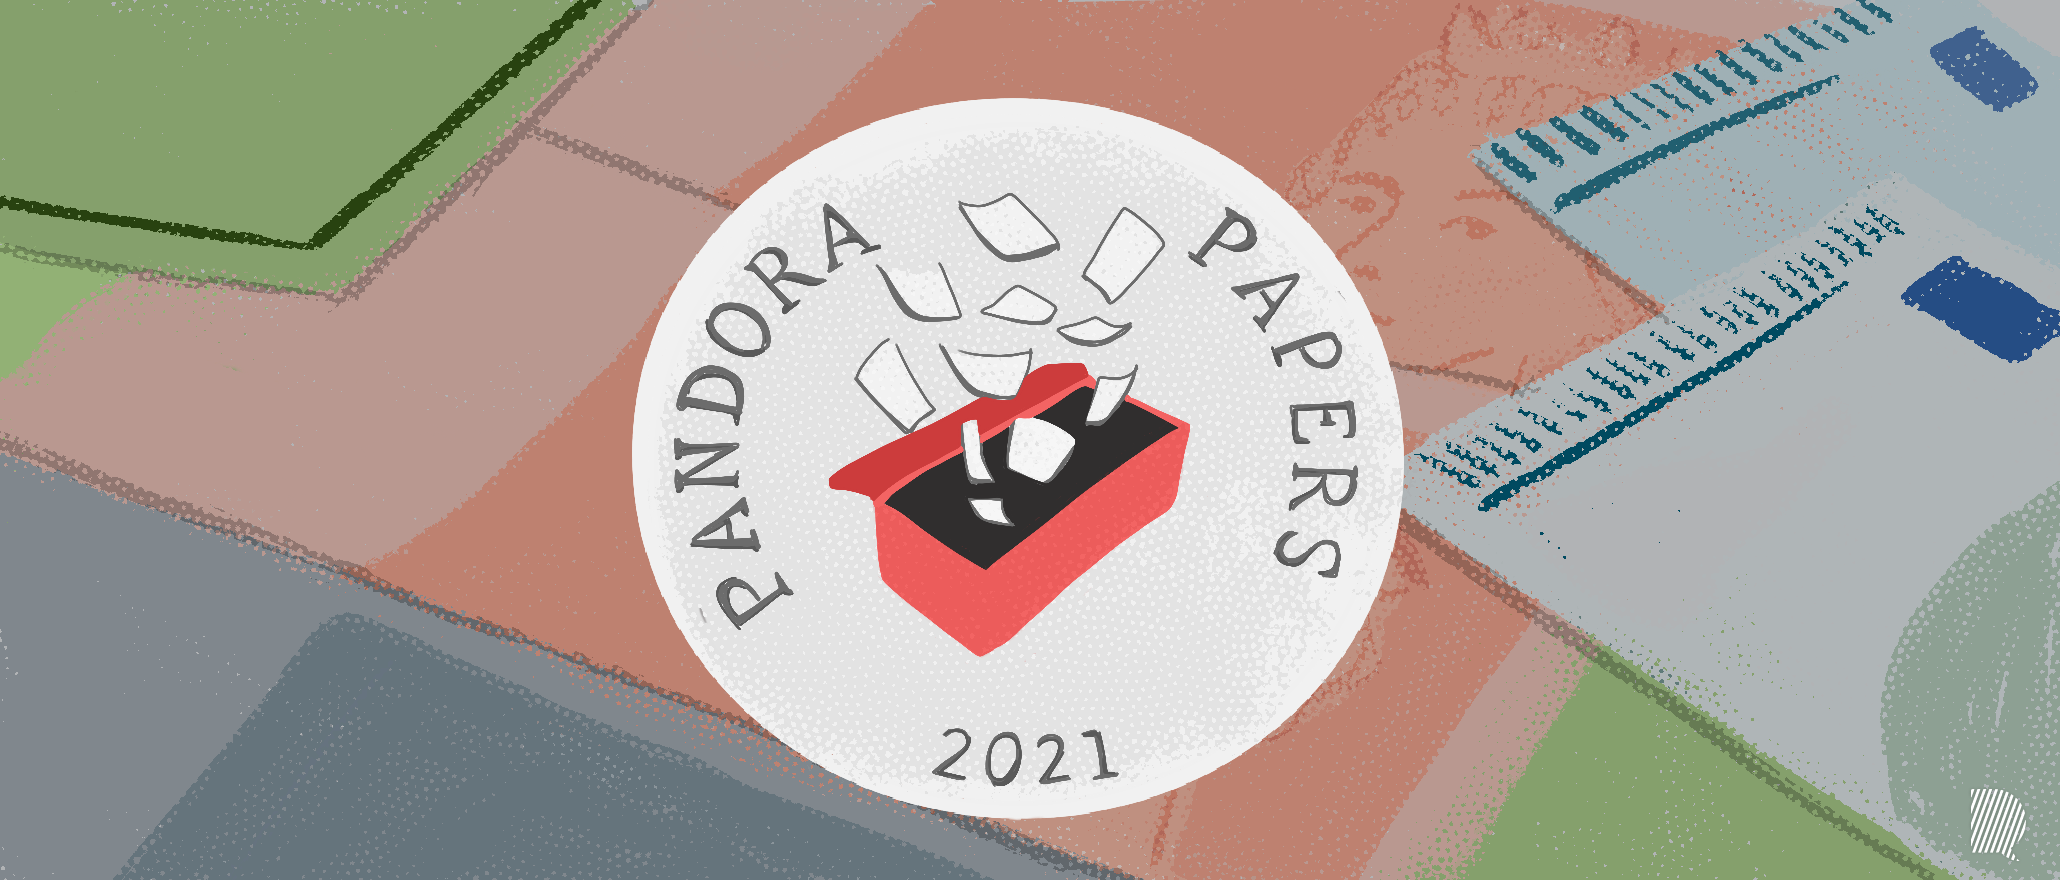 Optimisation et Évasion fiscale : tout comprendre sur l'enquête des « Pandora Papers »